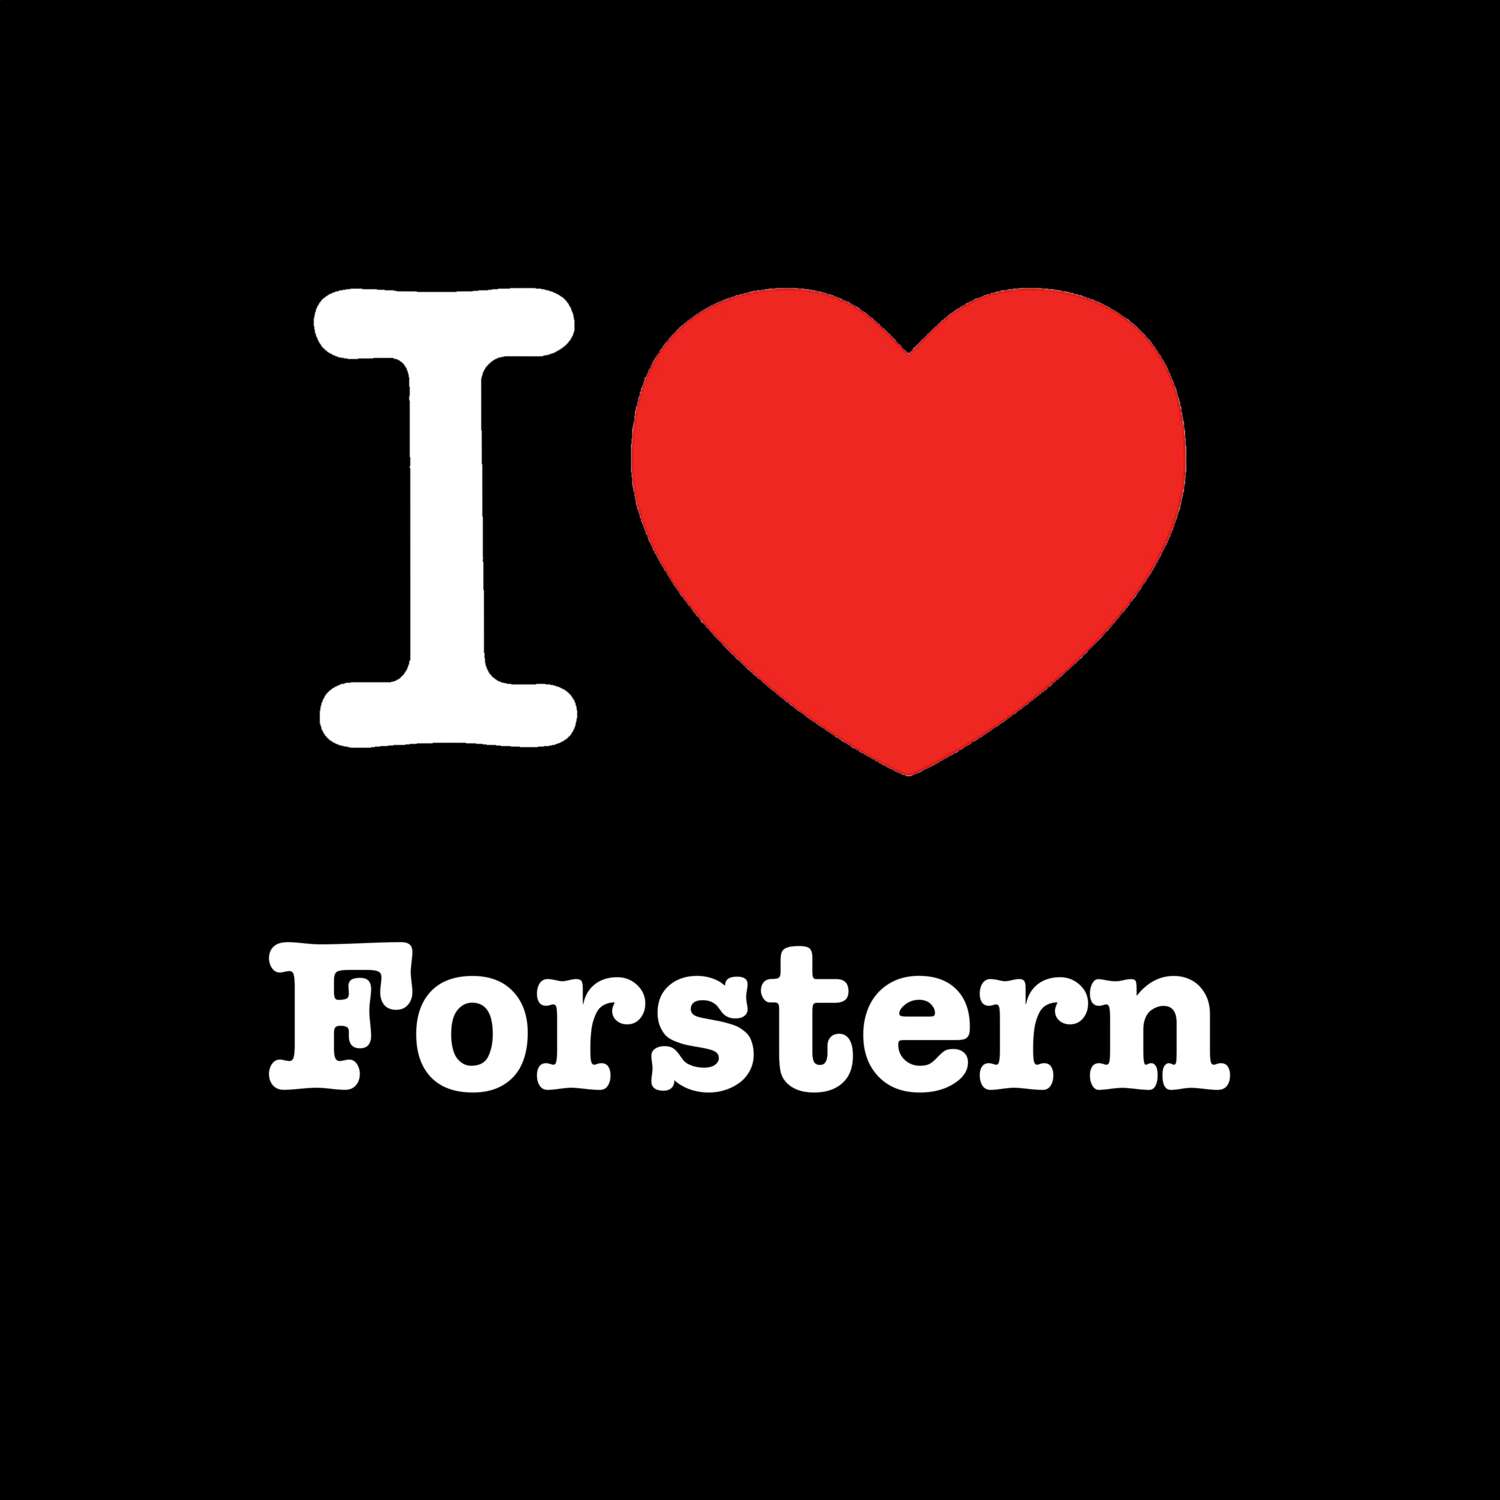 Forstern T-Shirt »I love«